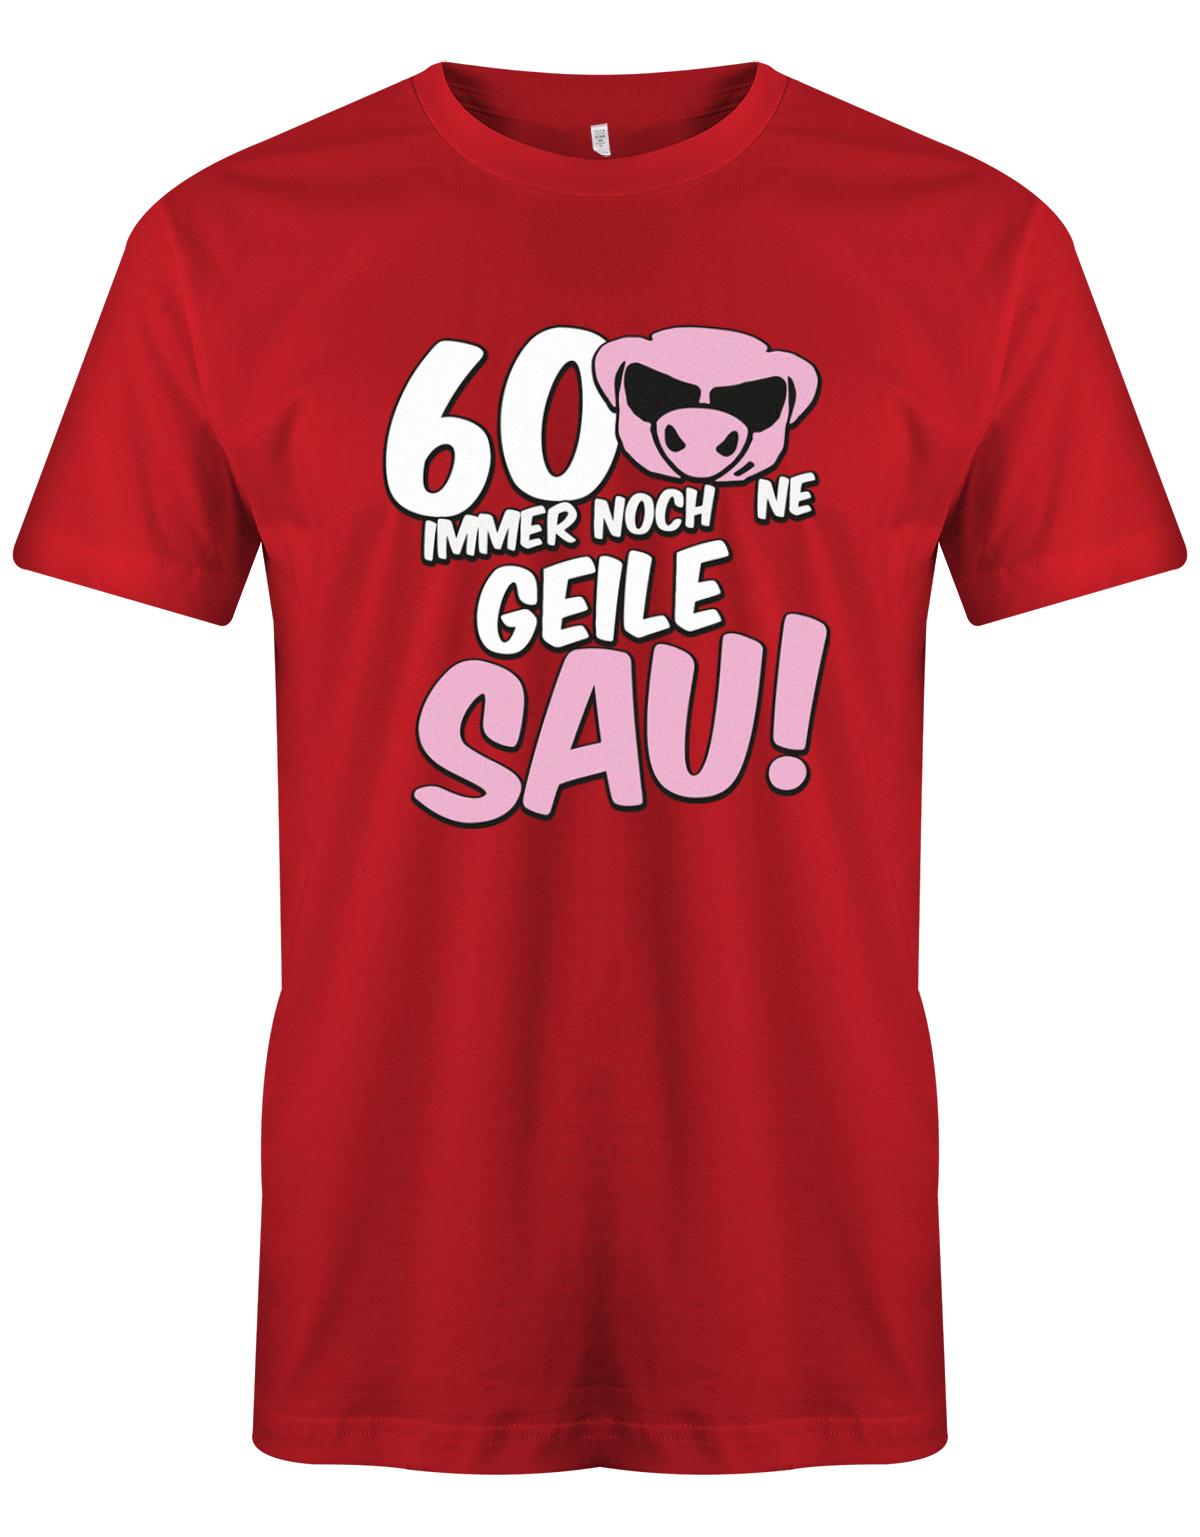 Lustiges T-Shirt zum 60 Geburtstag für den Mann Bedruckt mit 60 Immer noch 'ne geile Sau! Sau mit Sonnenbrille Rot